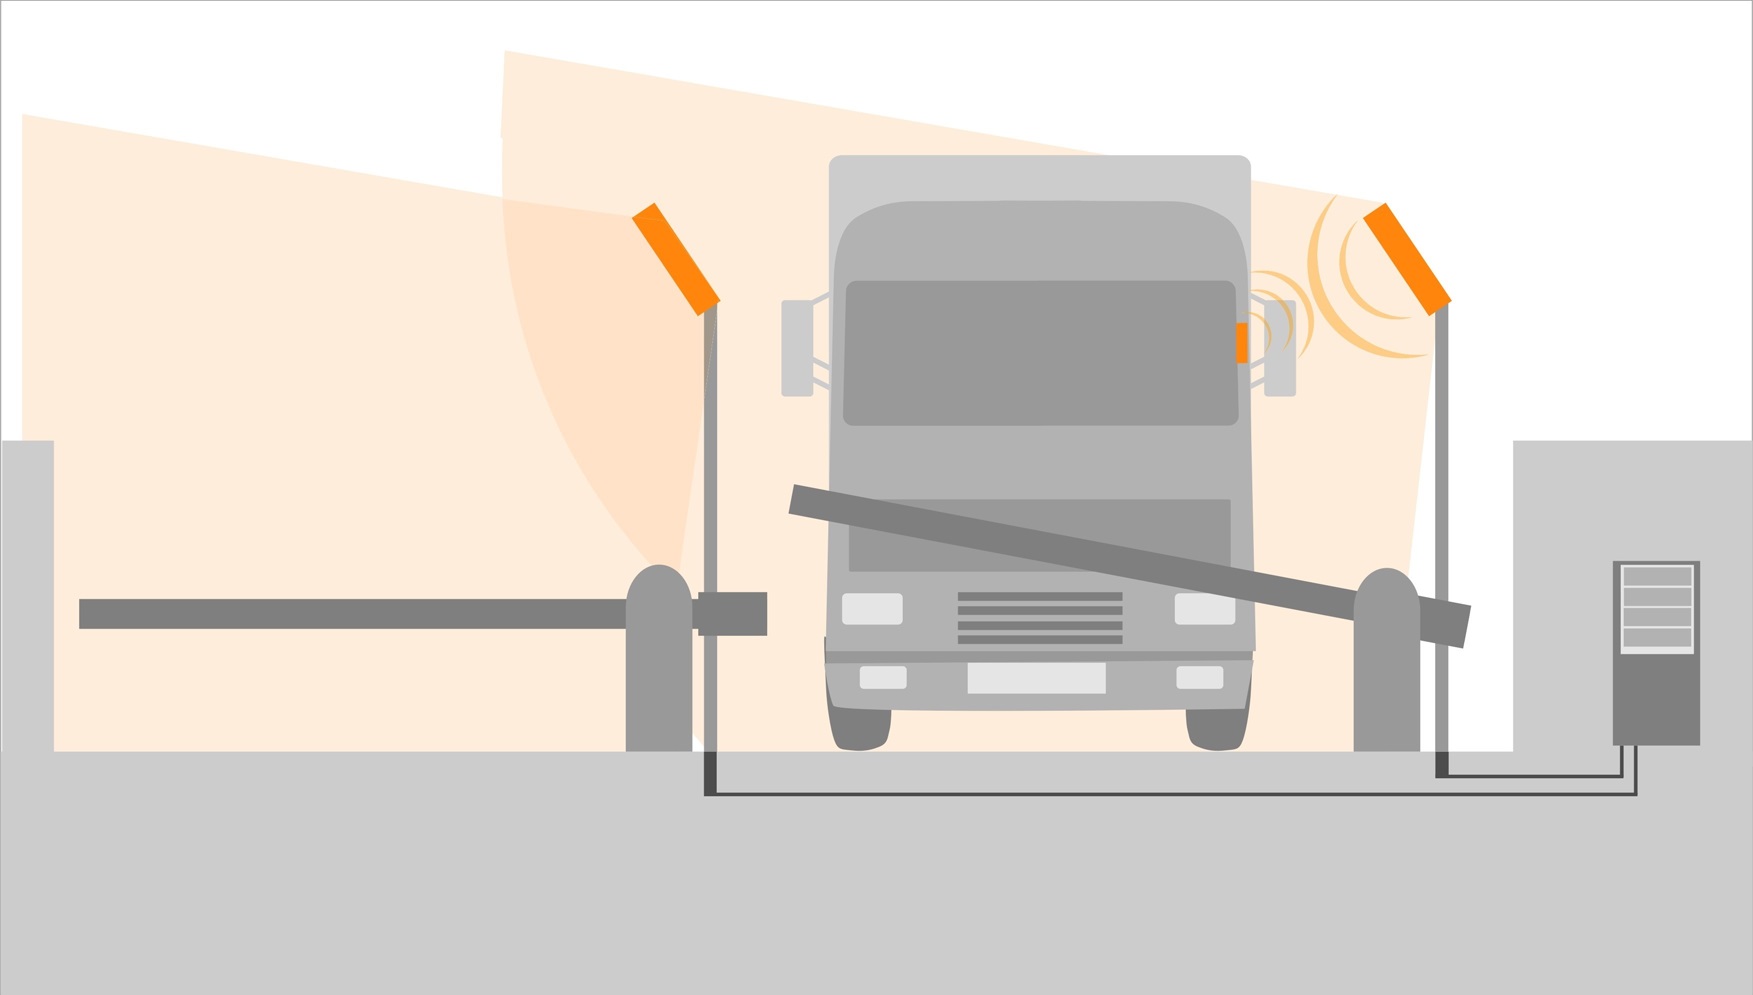 Иллюстрация применения RFID для идентификации автомобильного транспорта. Идентификация грузовиков